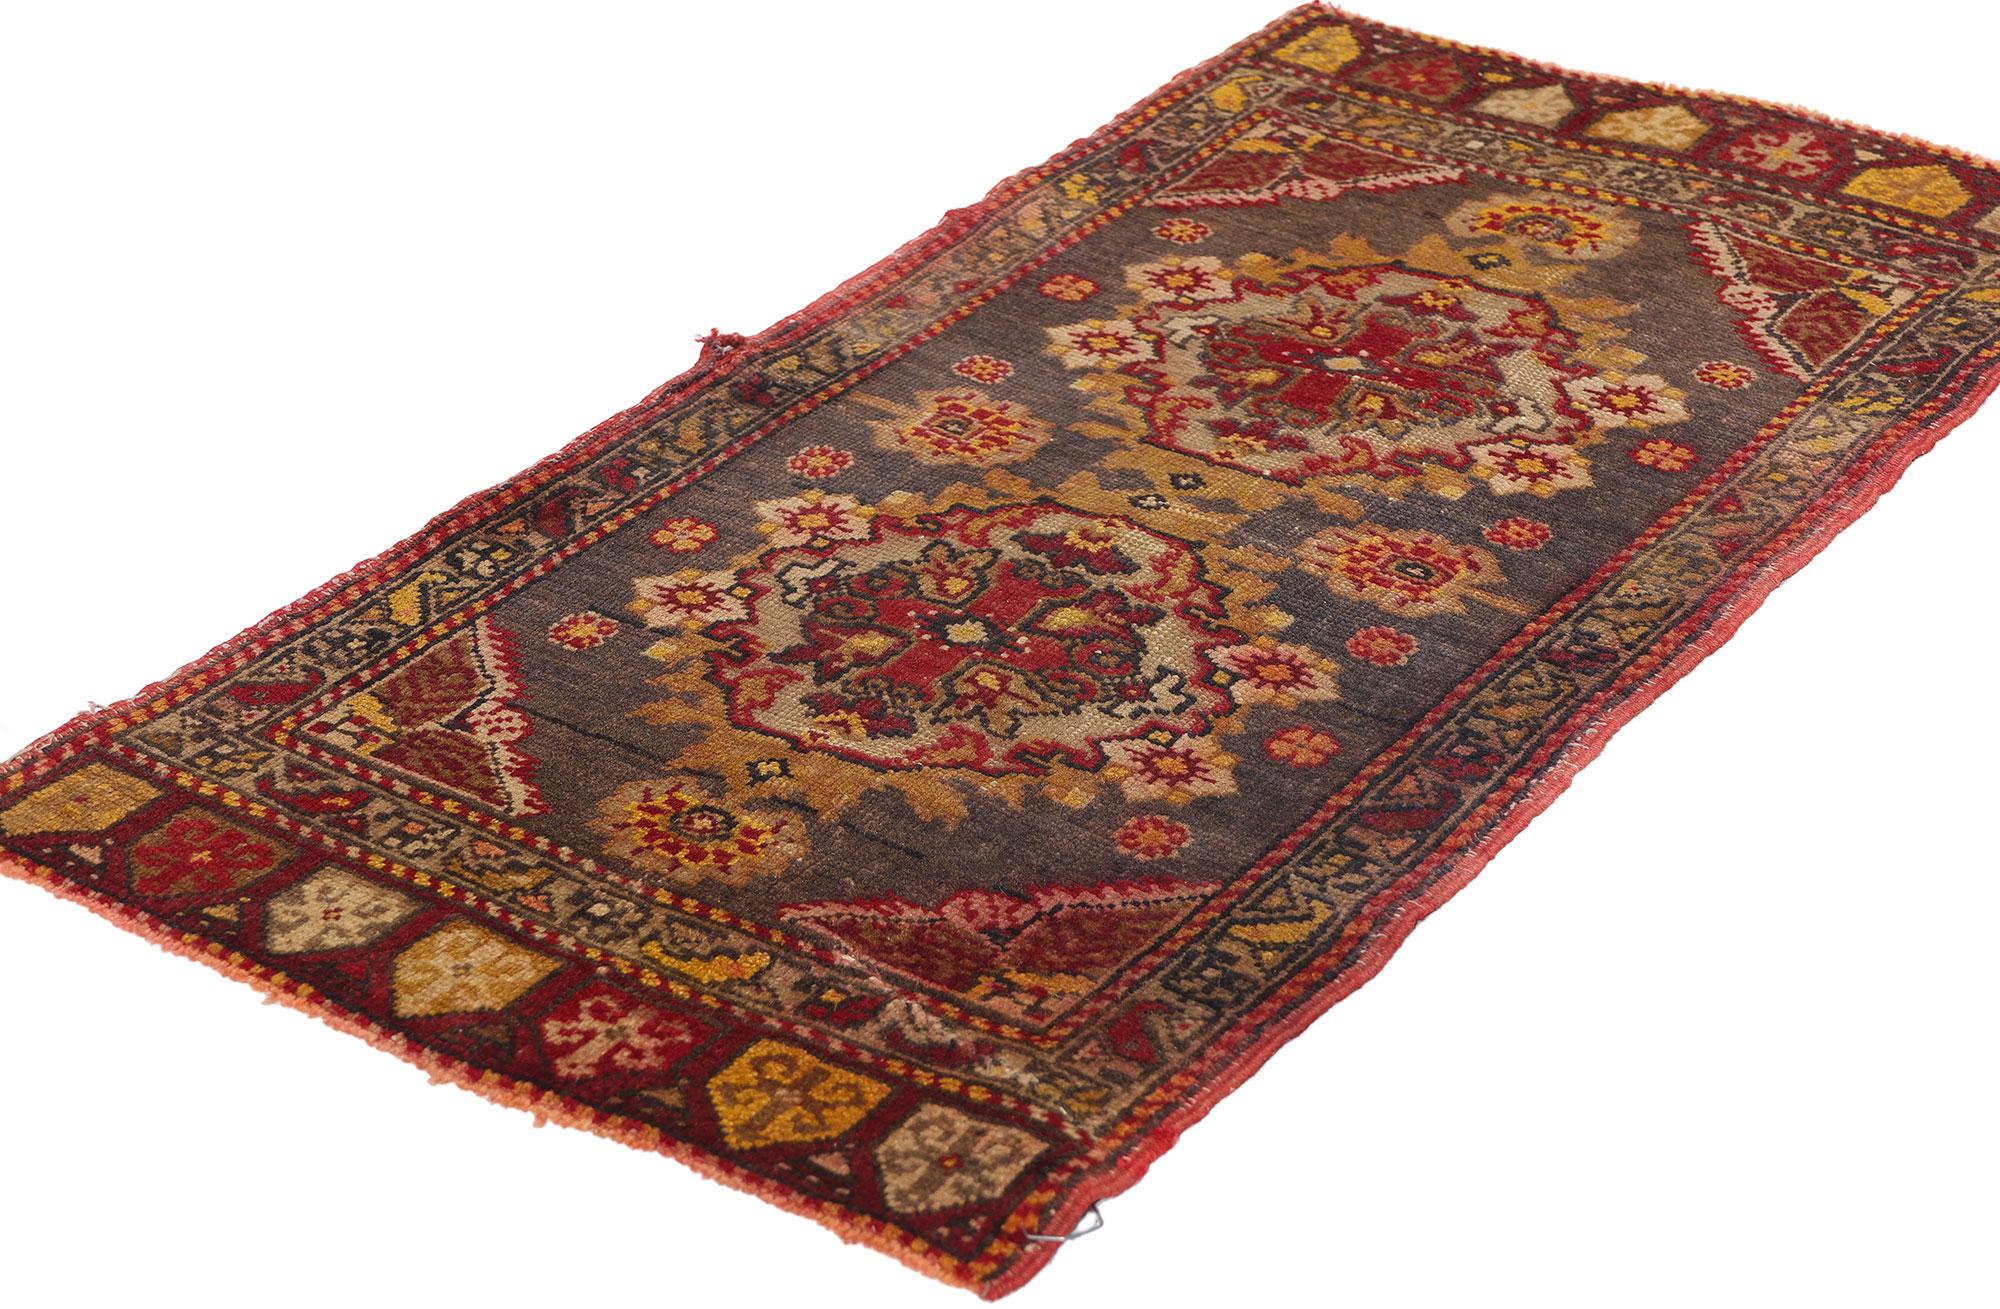 51200 Tapis turc vintage Yastik, 01'06 x 02'11. Les tapis turcs Yastik, également connus sous le nom de 